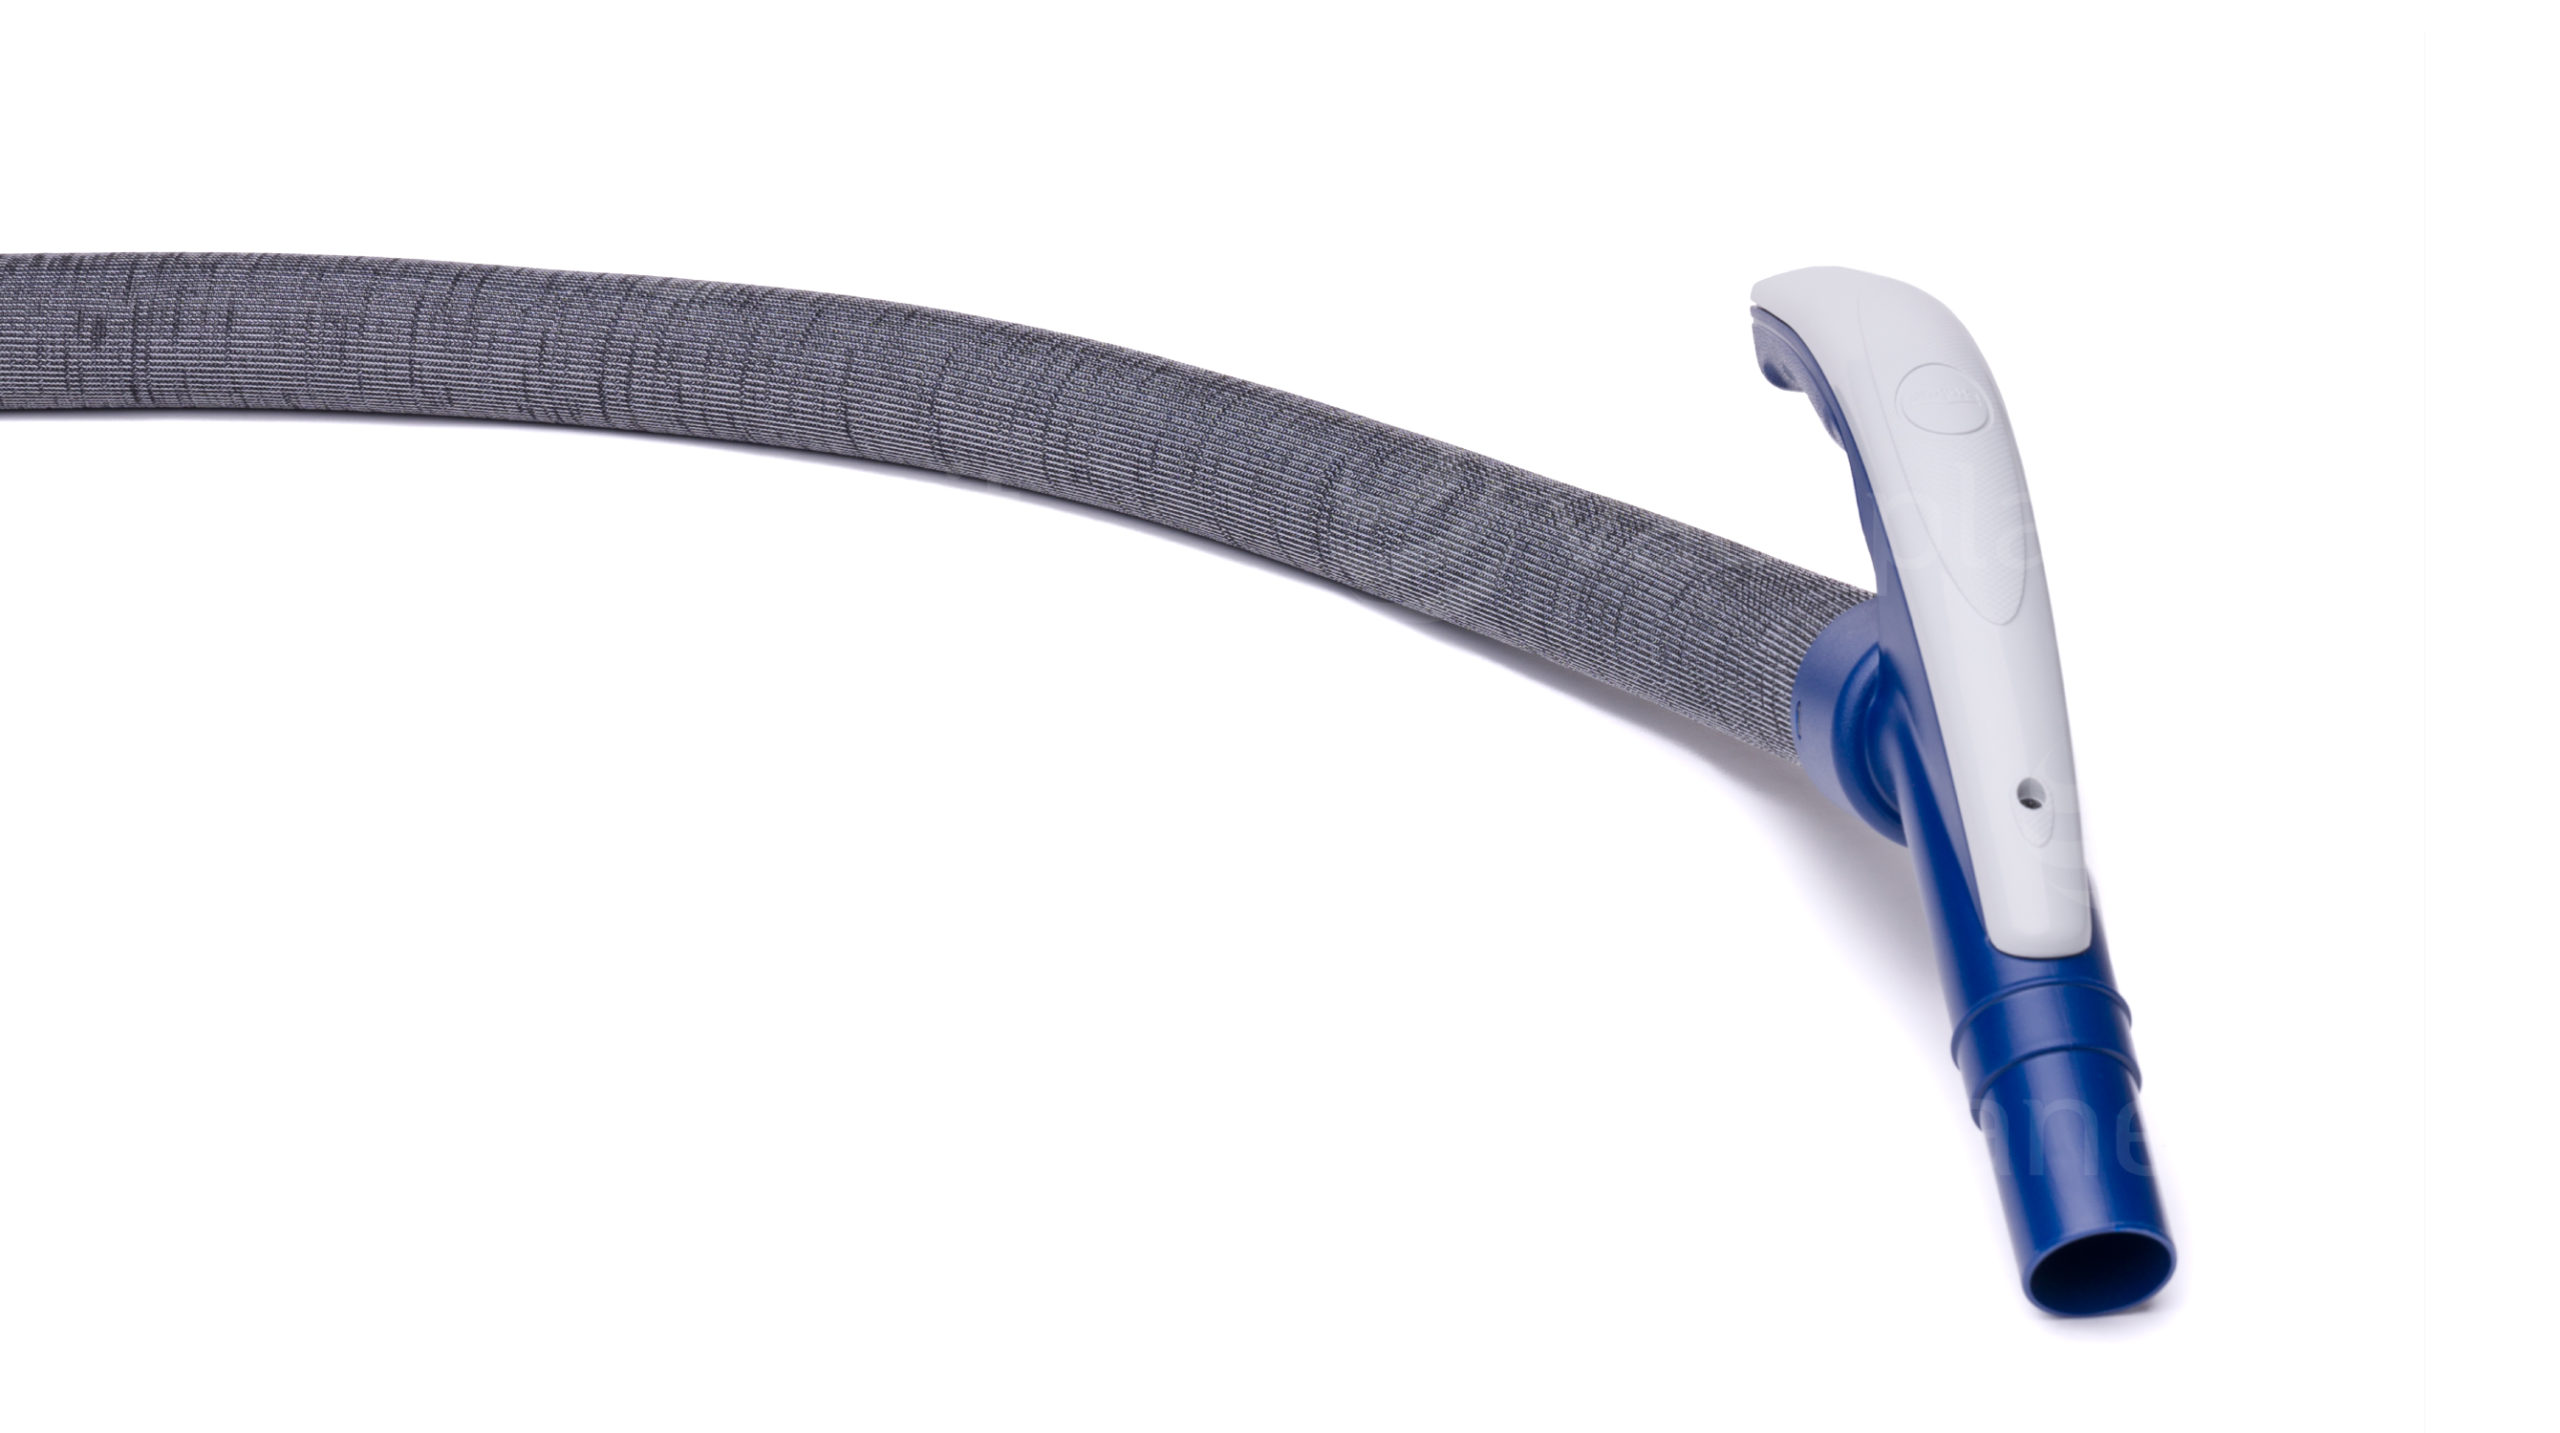 Dettaglio impugnatura del tubo flessibile per aspirapolvere centralizzato con calza di rivestimento integrata